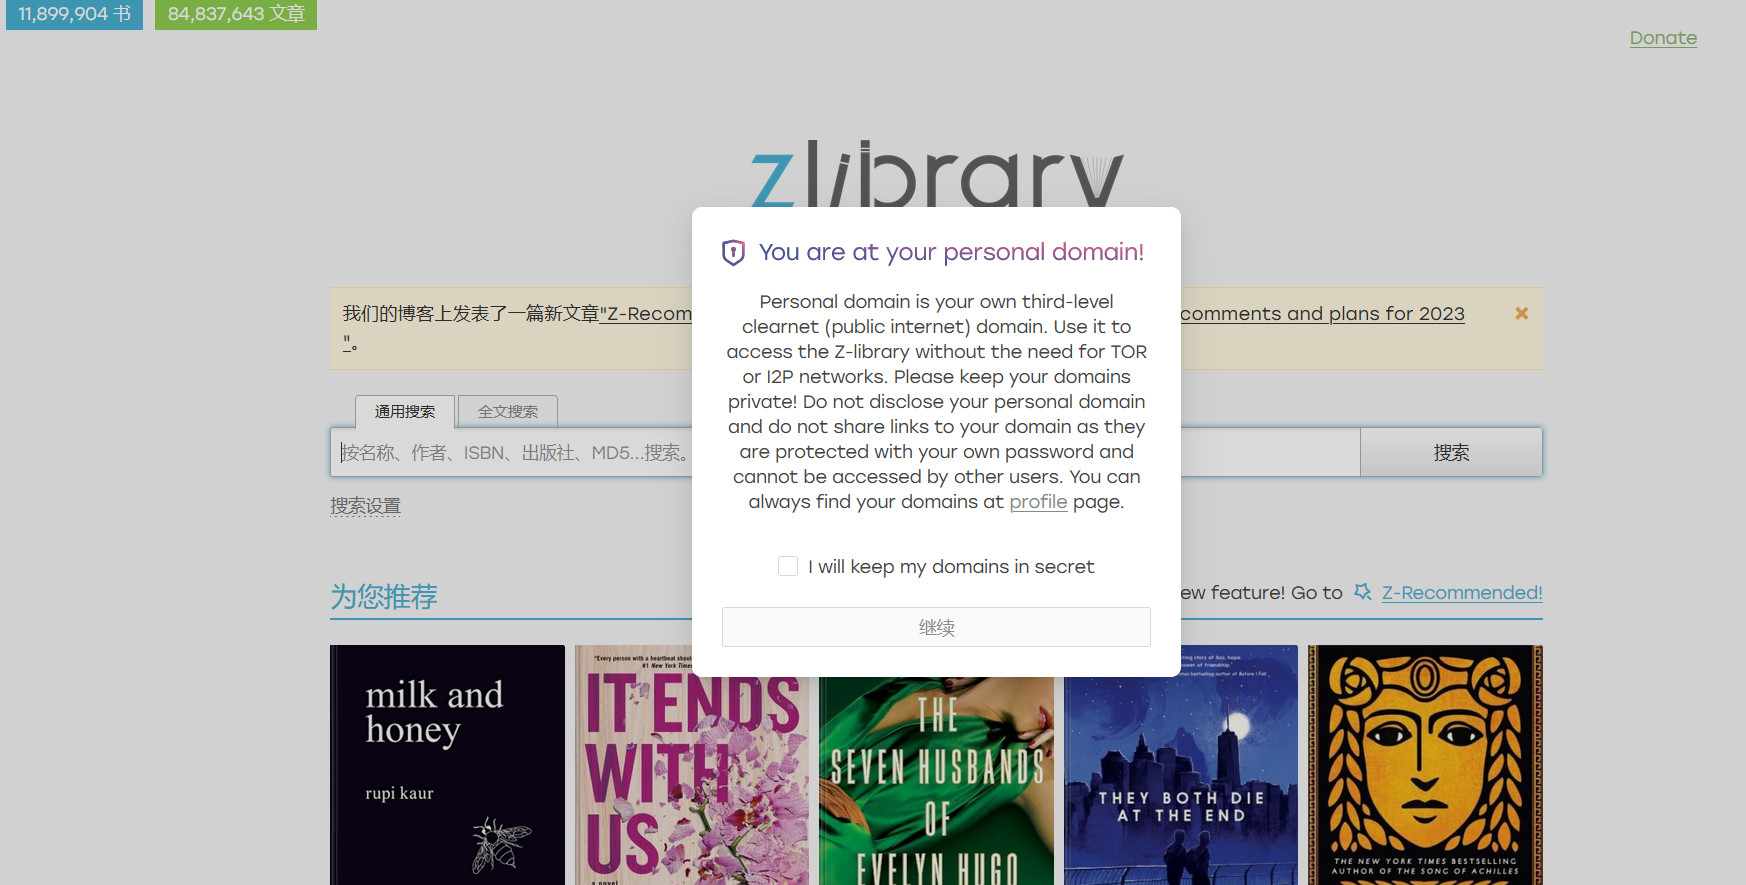 捐助过z-library 的用户，可以拥有自己的私有公网域名了